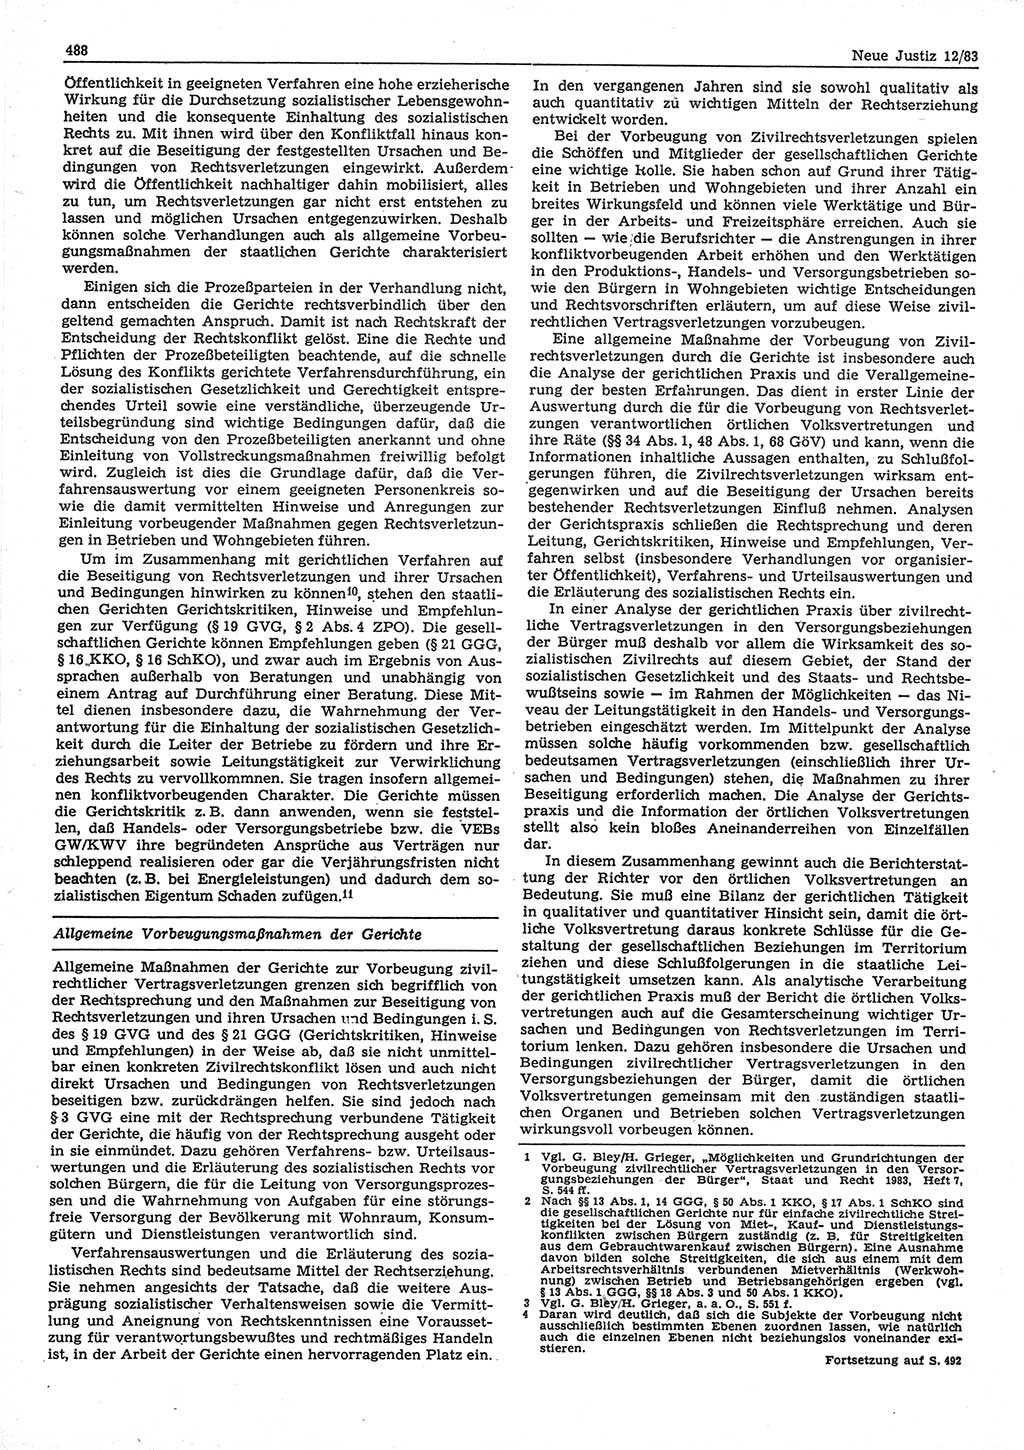 Neue Justiz (NJ), Zeitschrift für sozialistisches Recht und Gesetzlichkeit [Deutsche Demokratische Republik (DDR)], 37. Jahrgang 1983, Seite 488 (NJ DDR 1983, S. 488)